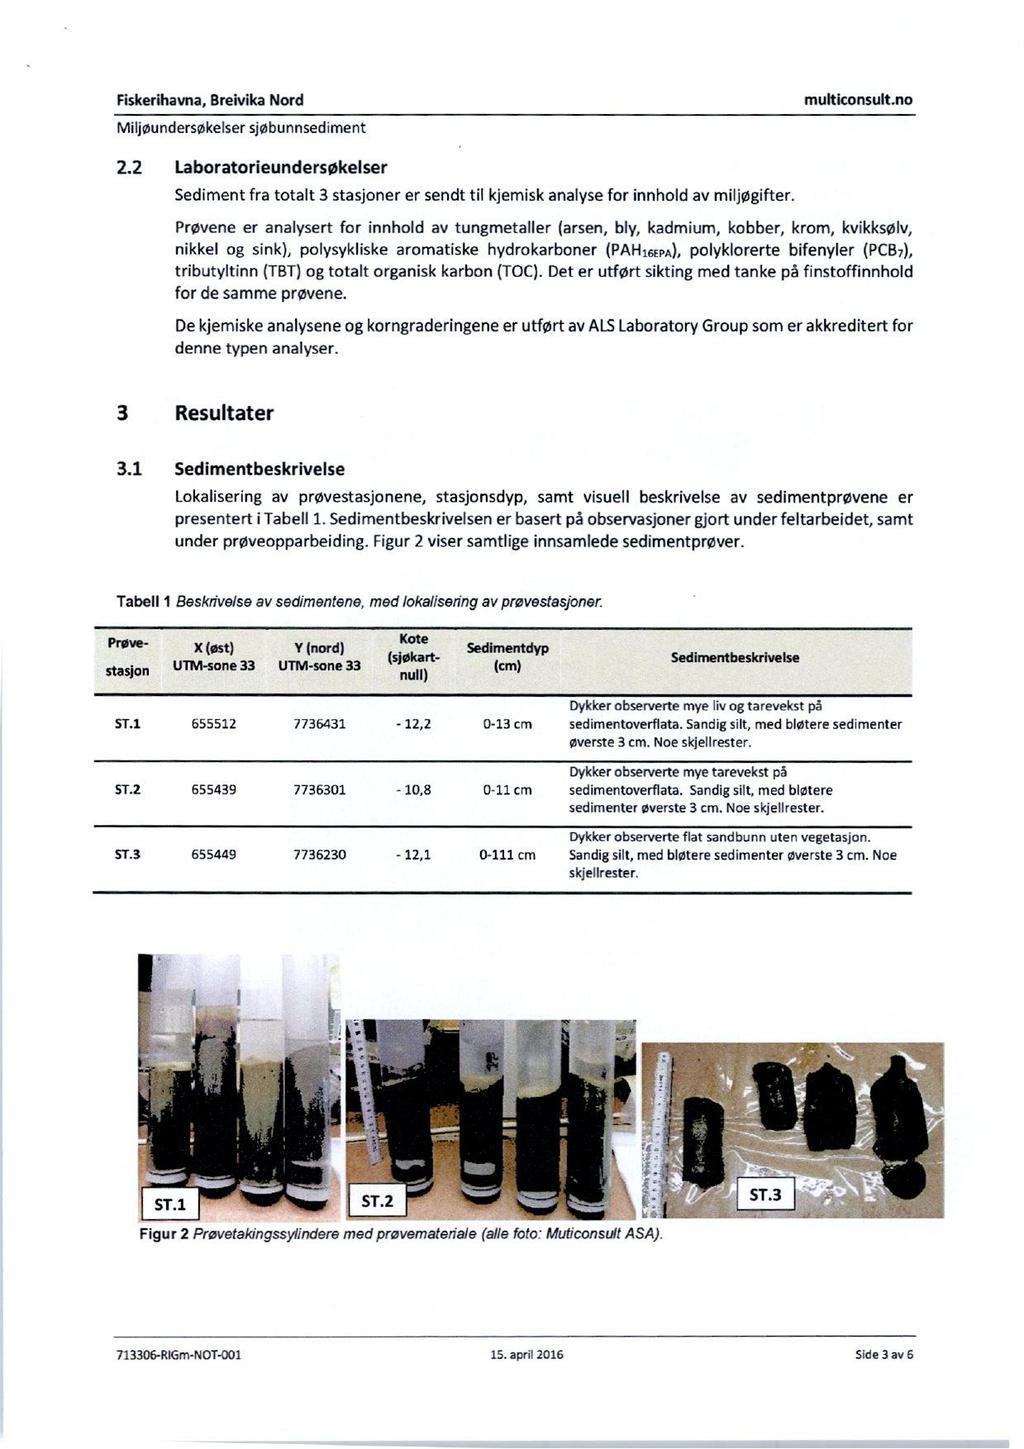 Fiskerihavna, Breivika Nord muiticonsult.no Miljøundersøkelsersjøbunnsediment 2.2 Laboratorieundersøkelser Sediment fra totalt 3 stasjoner er sendt til kjemisk analyse for innhold avm iljøgifter.